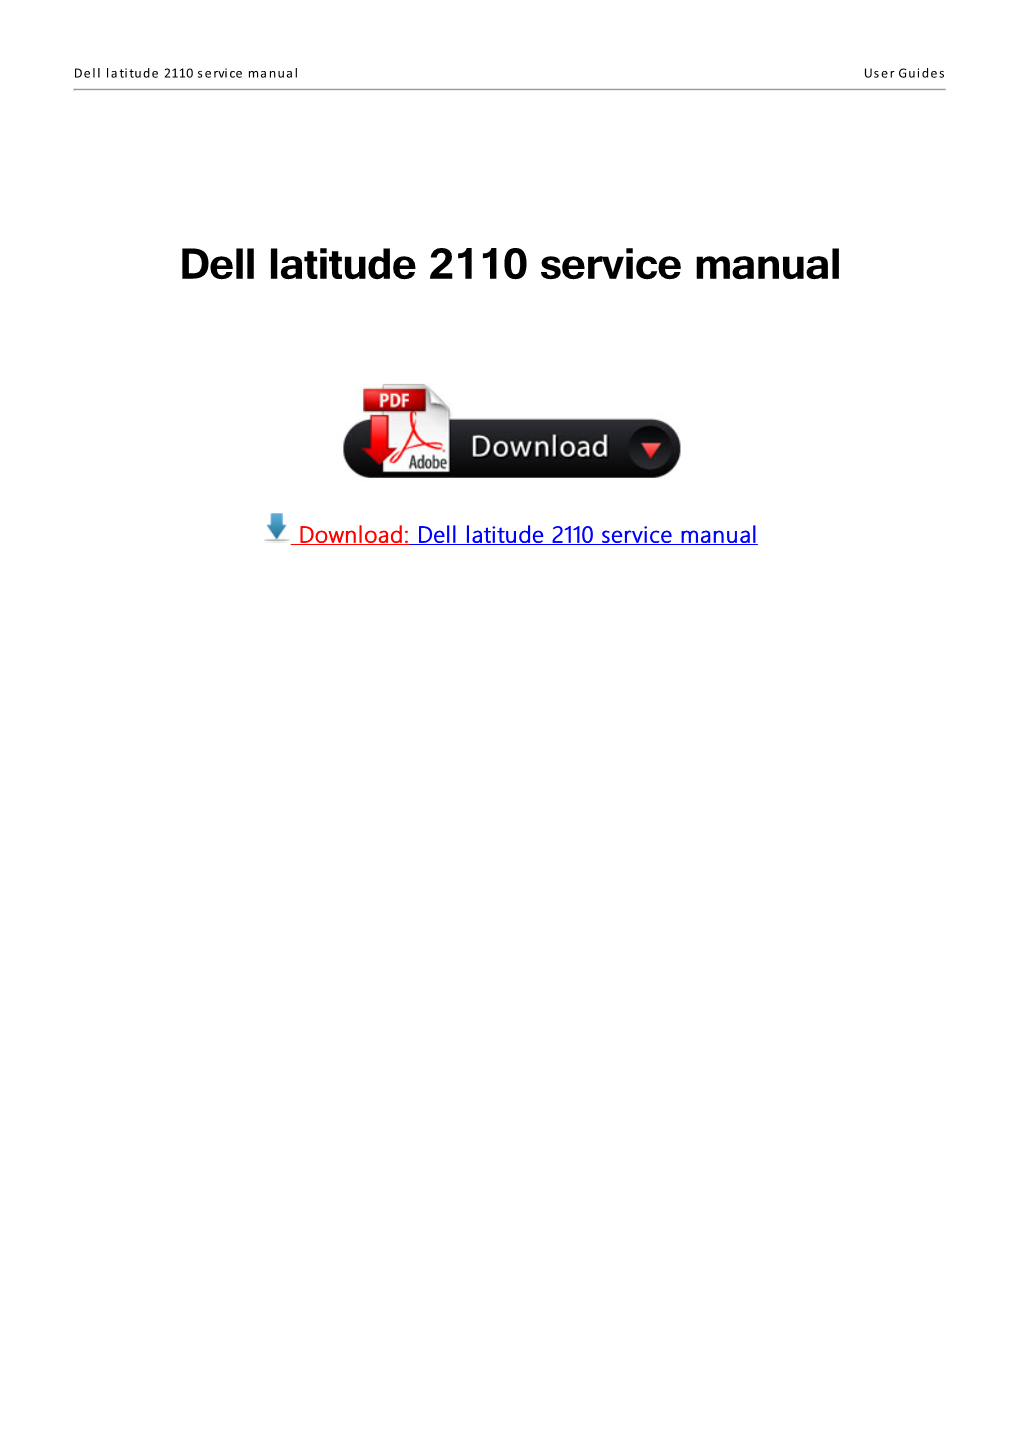 Dell Latitude 2110 Service Manual User Guides